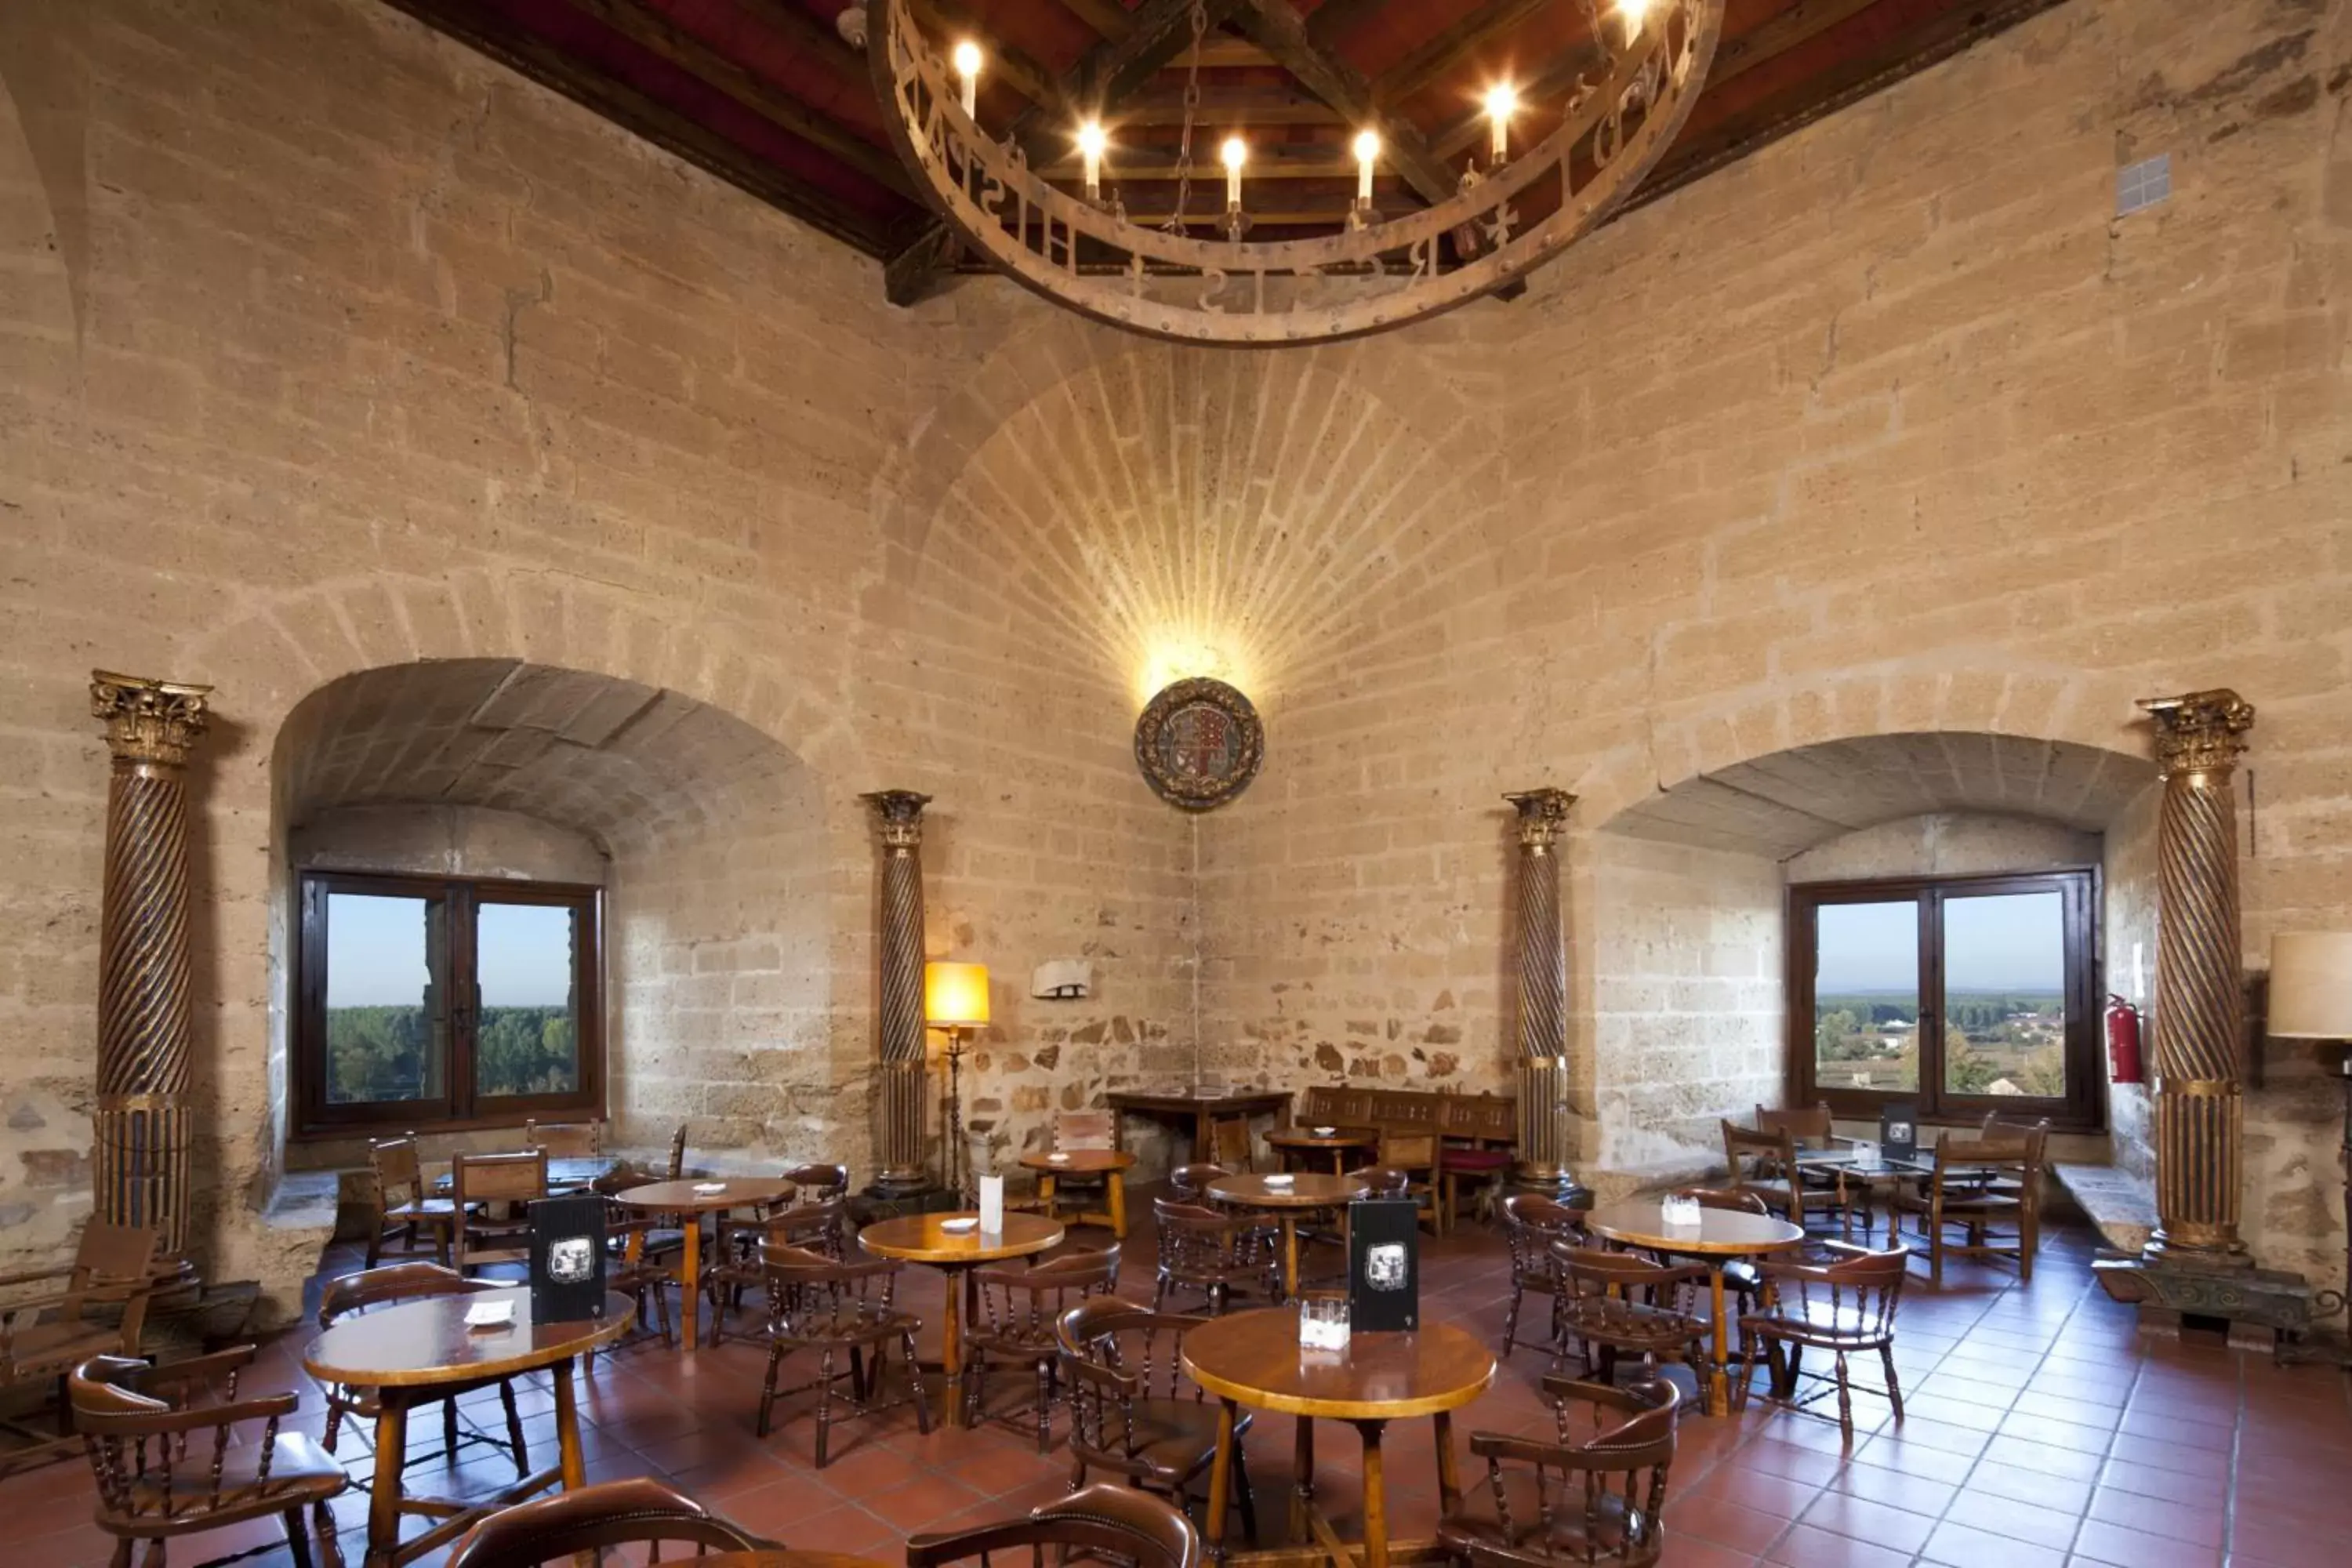 Lounge or bar, Restaurant/Places to Eat in Parador de Benavente